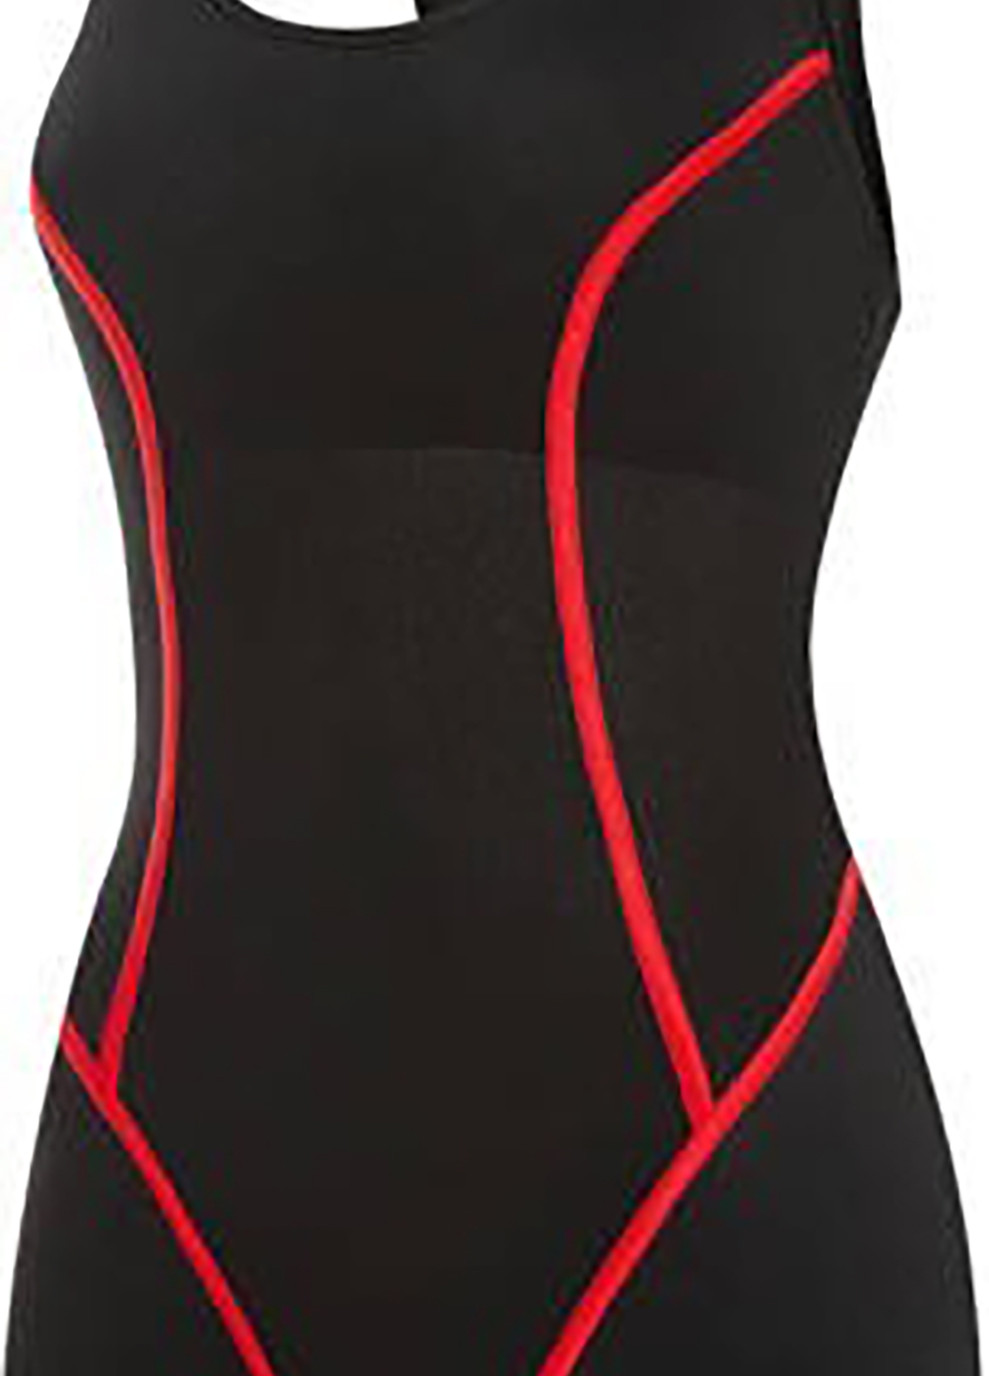 Комбинированный демисезонный купальник роздельный для женщин rita 4883 черный, красный жен Aqua Speed